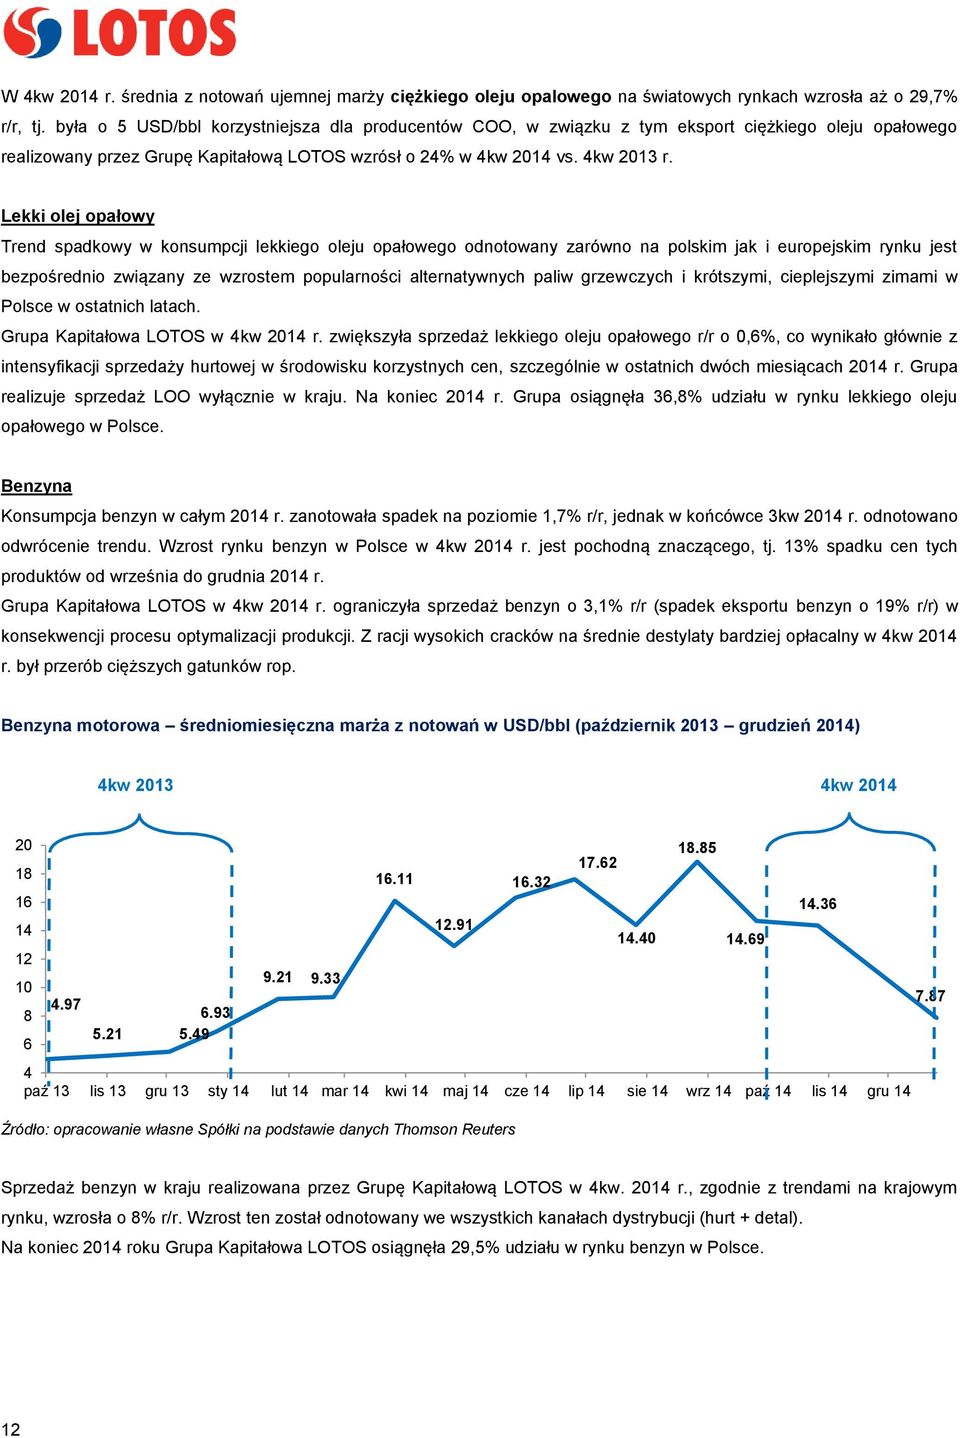 Lekki olej opałowy Trend spadkowy w konsumpcji lekkiego oleju opałowego odnotowany zarówno na polskim jak i europejskim rynku jest bezpośrednio związany ze wzrostem popularności alternatywnych paliw